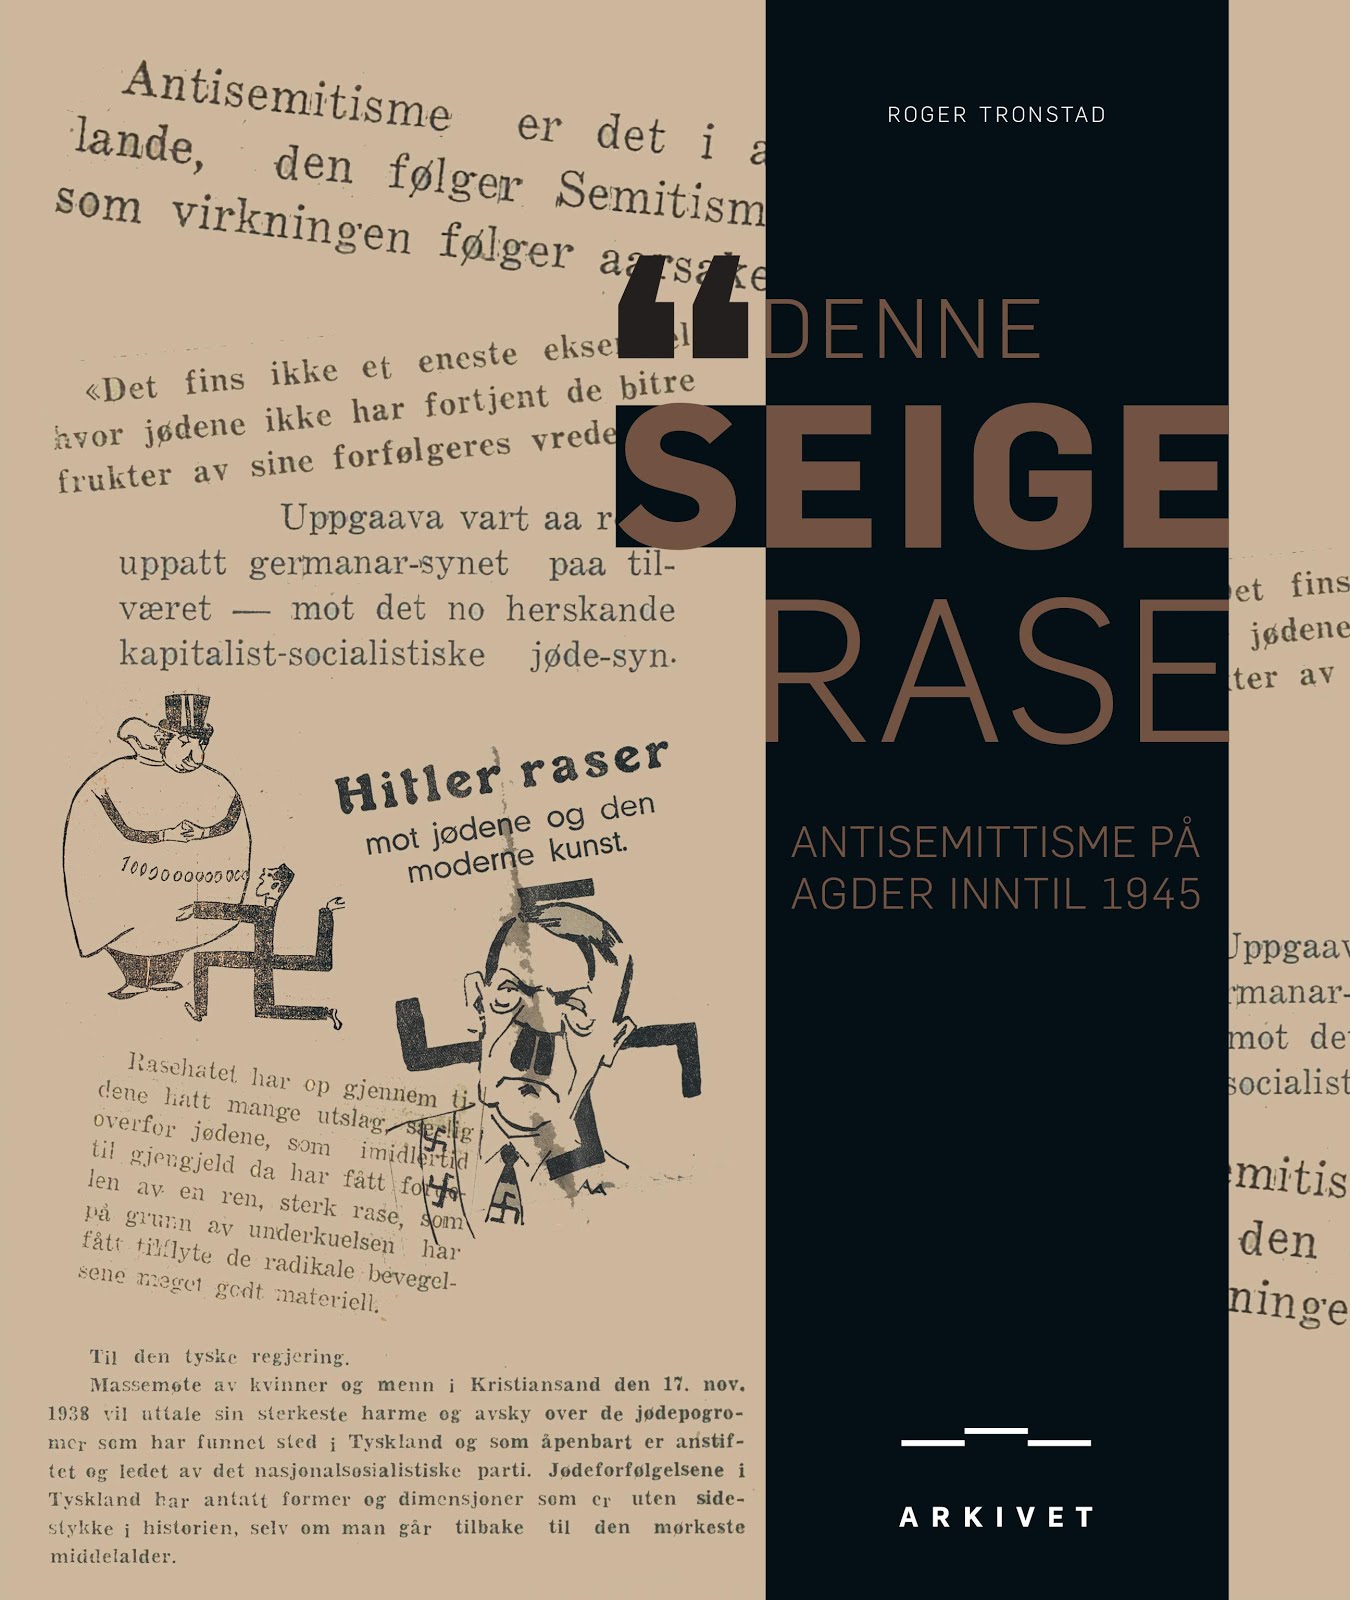 "Denne seige rase." Antisemittisme på Agder inntil 1945